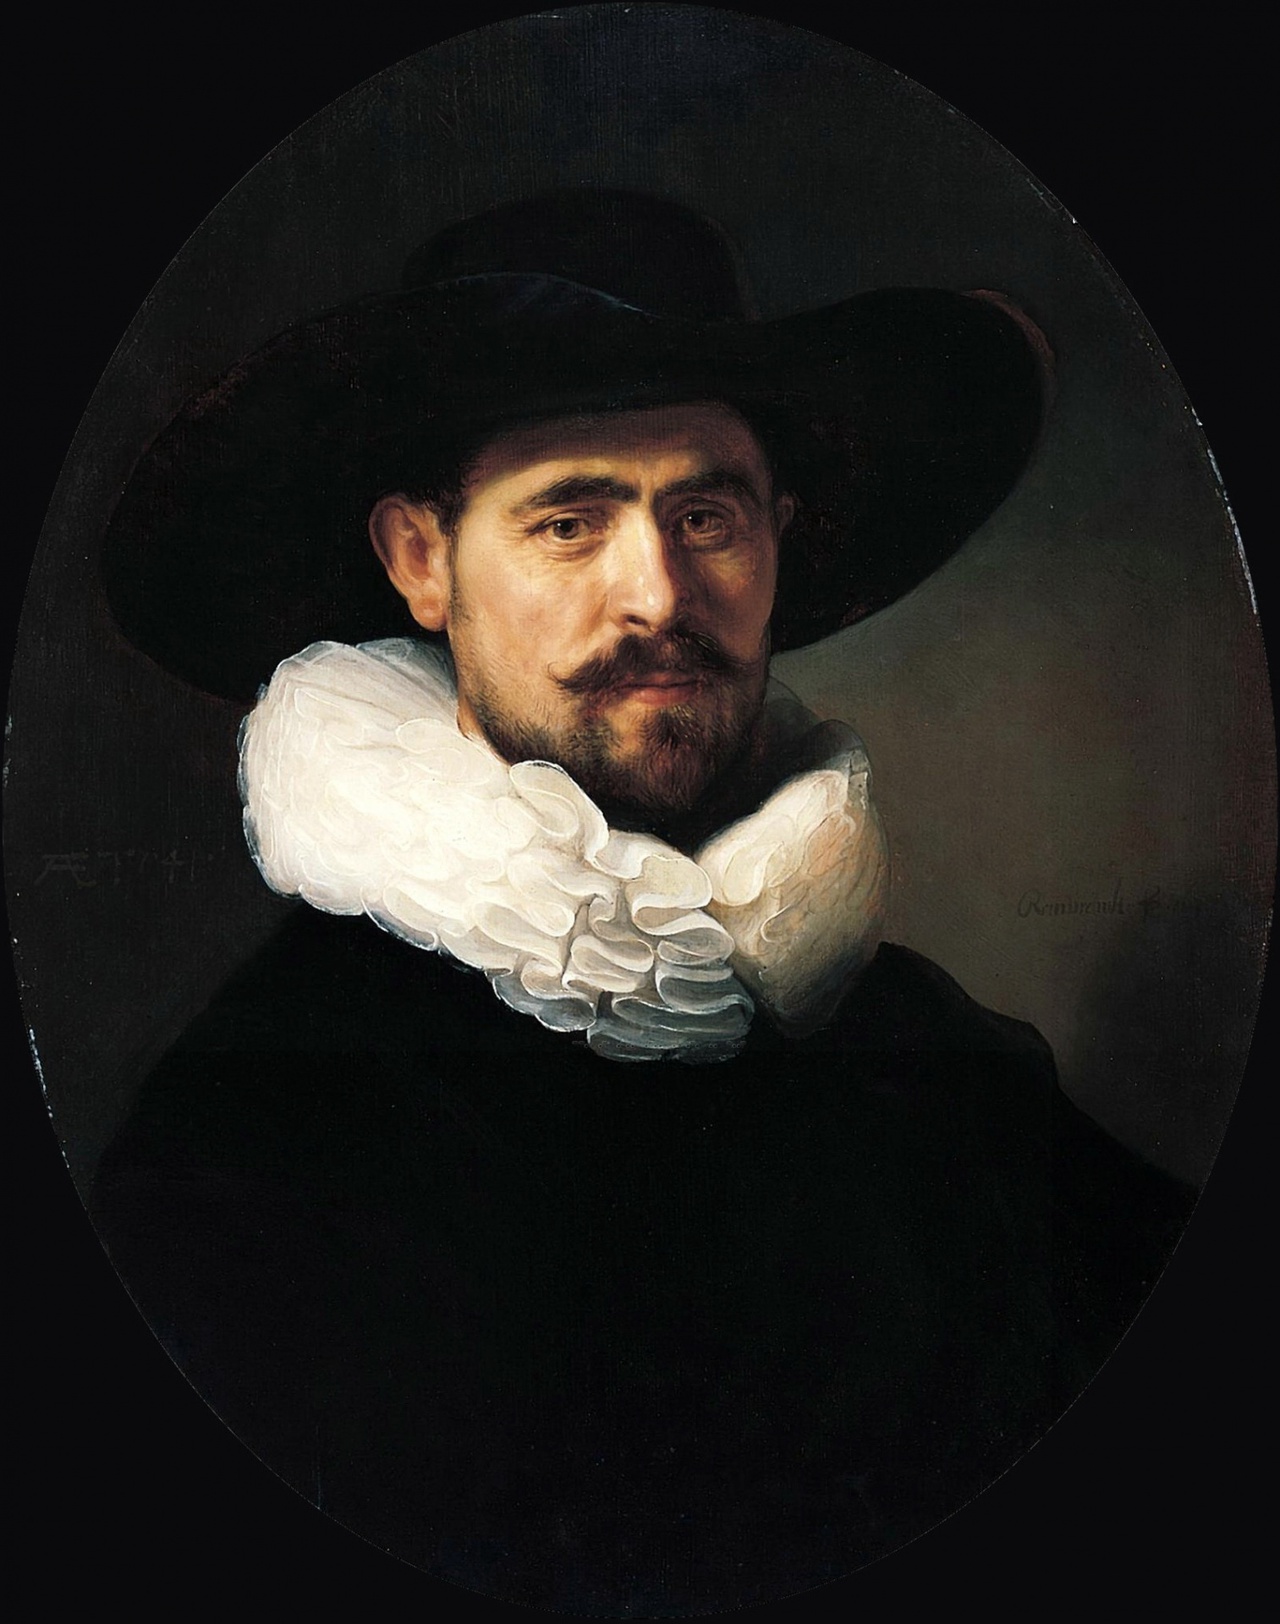 
    




    
        


    
        
            
        
        
            
        
    

    

    




    
        


    
        
            
        
        
            
        
    

    

    Рембрандт Харменс Ван Рейн – великий голландский живописец, рисовальщик и гравёр XVII …